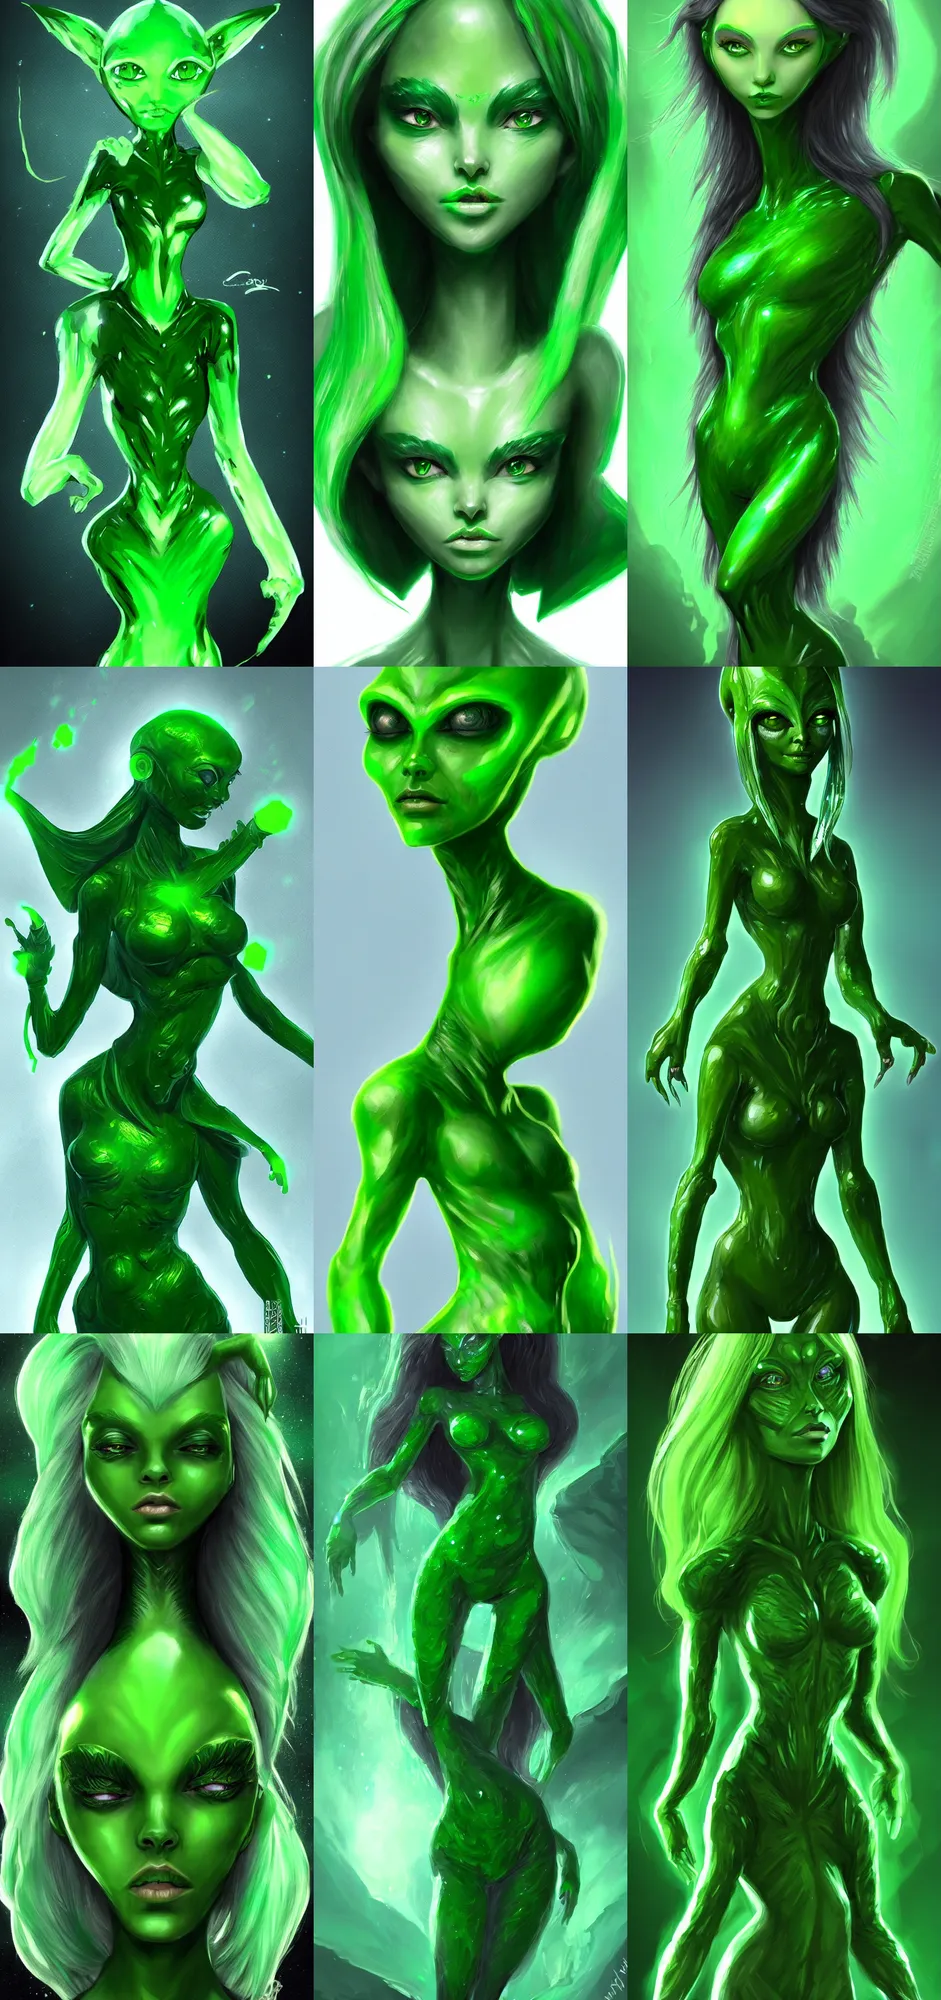 Prompt: green crystal alien girl, fantasy art, trending on artstation